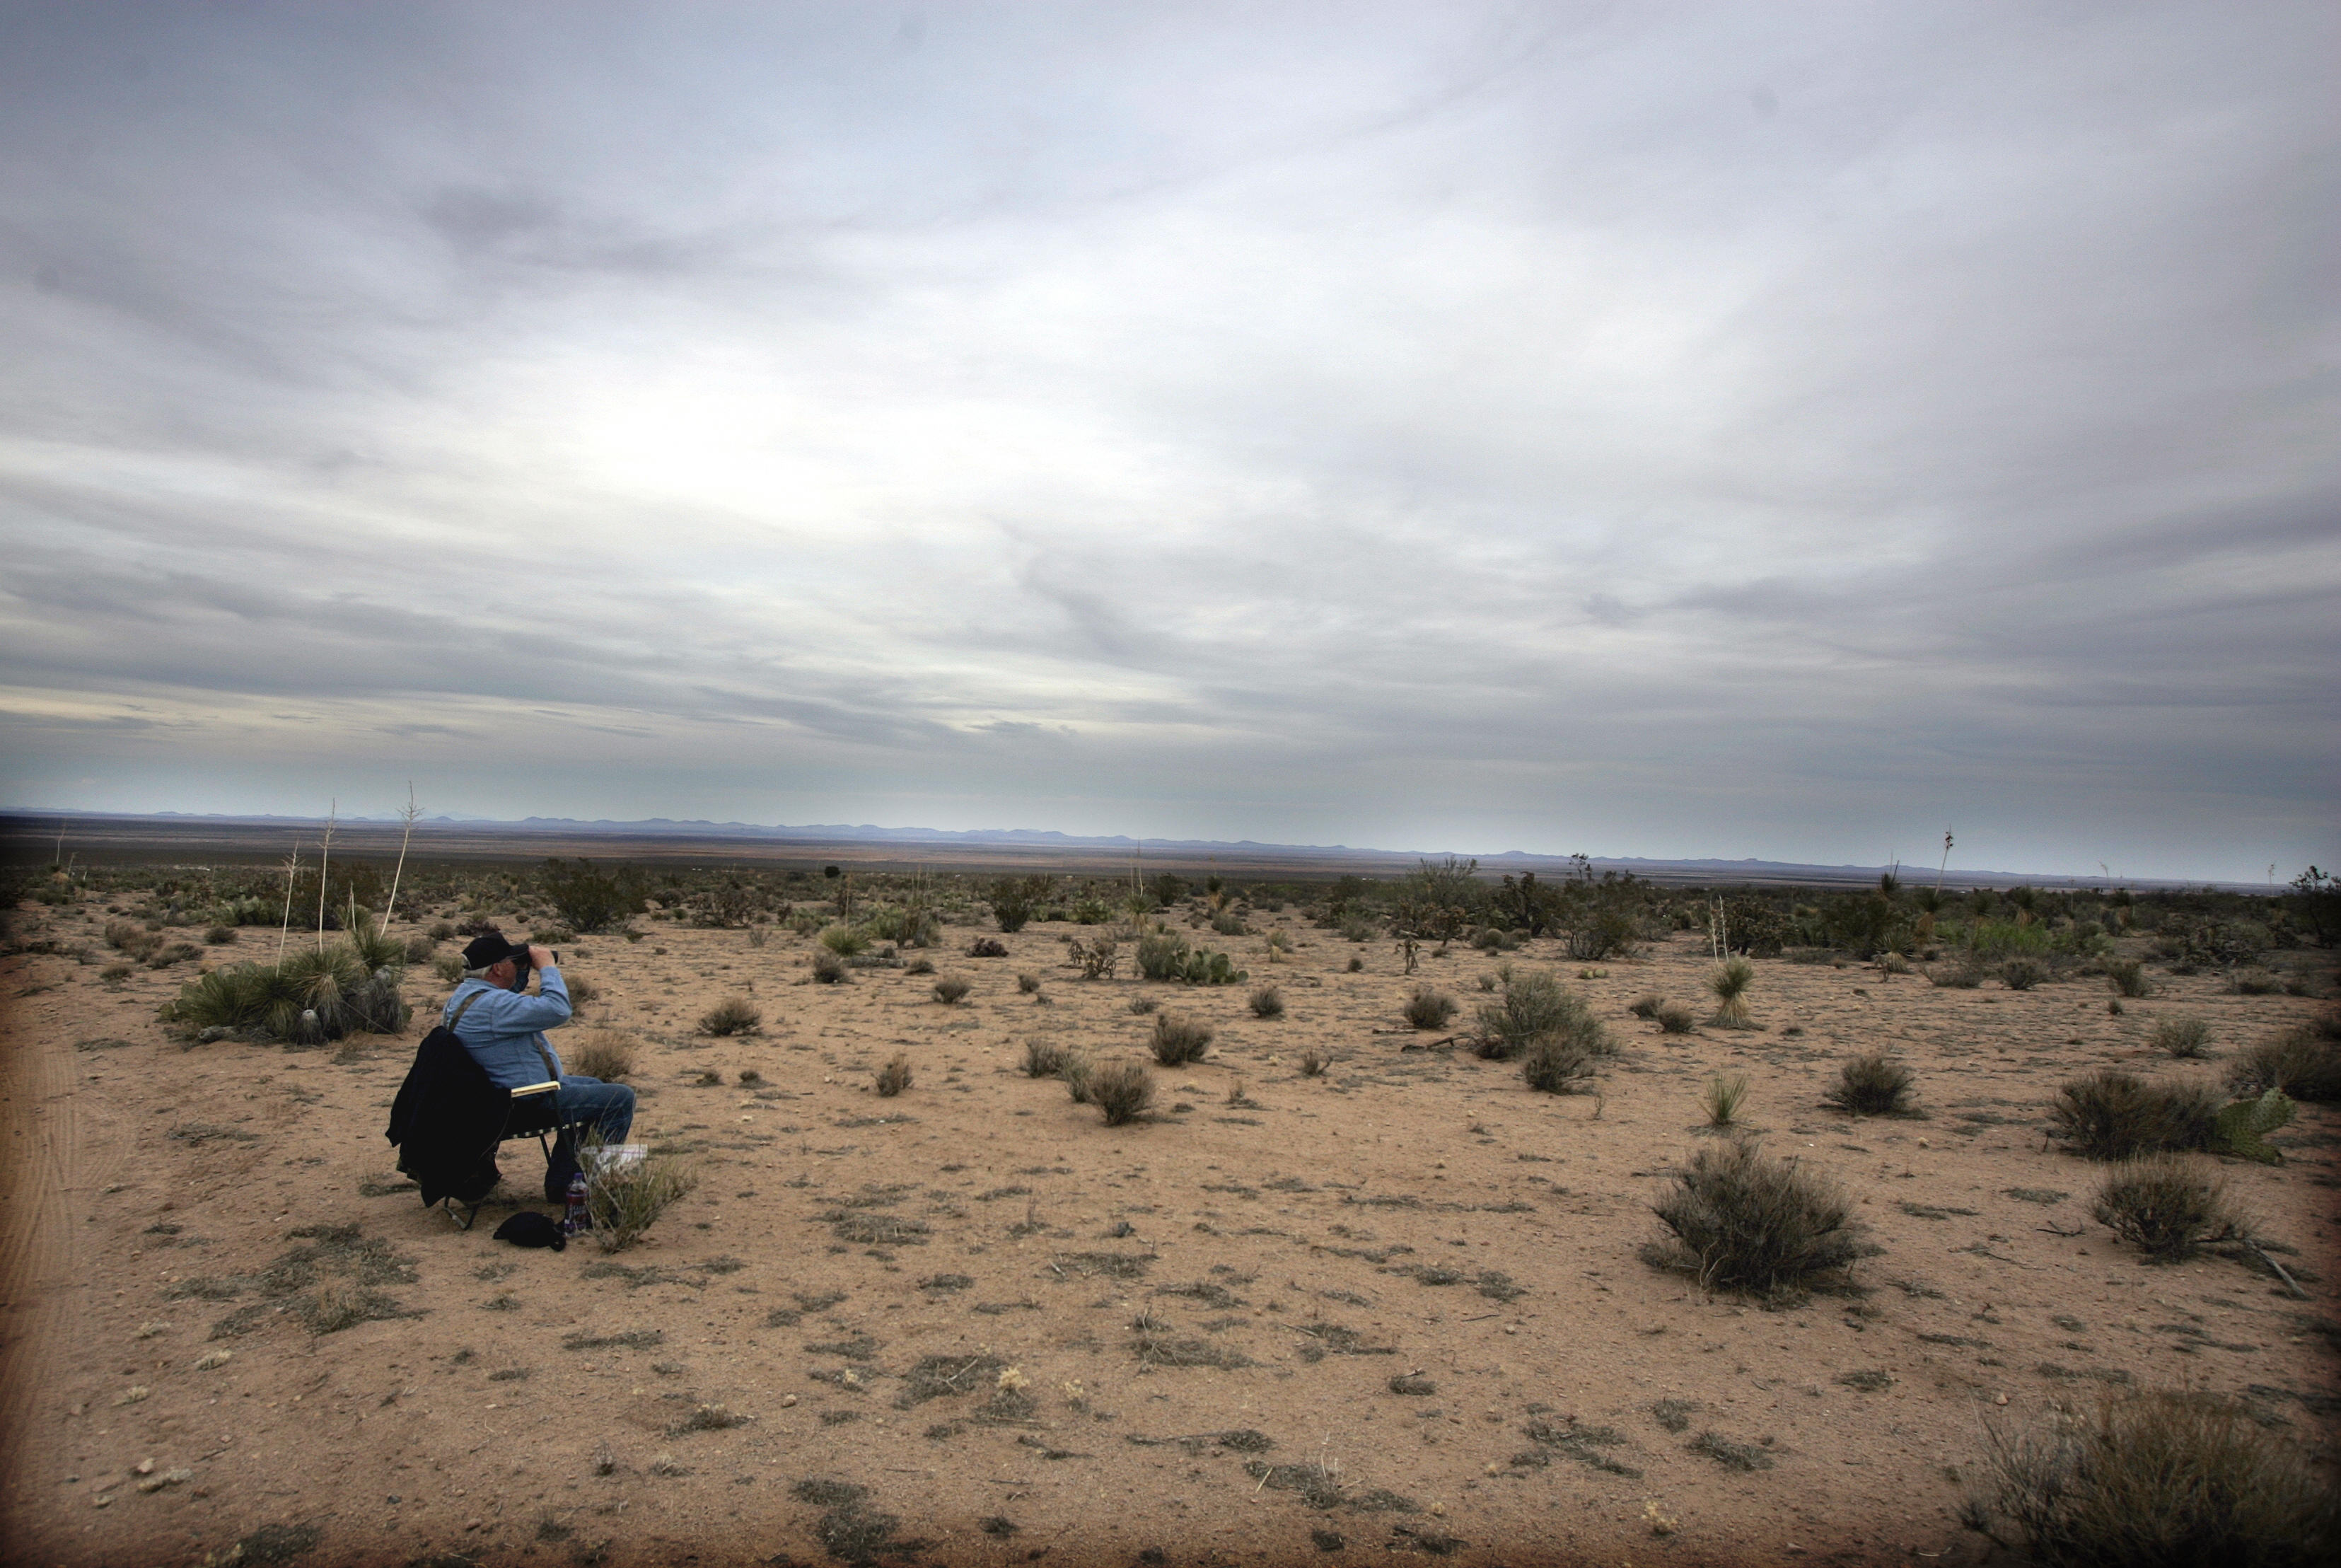 Bűnösnek talált a bíróság négy nőt, akik bevándorlóknak hagytak kinn vizet és élelmet egy arizonai sivatagban 